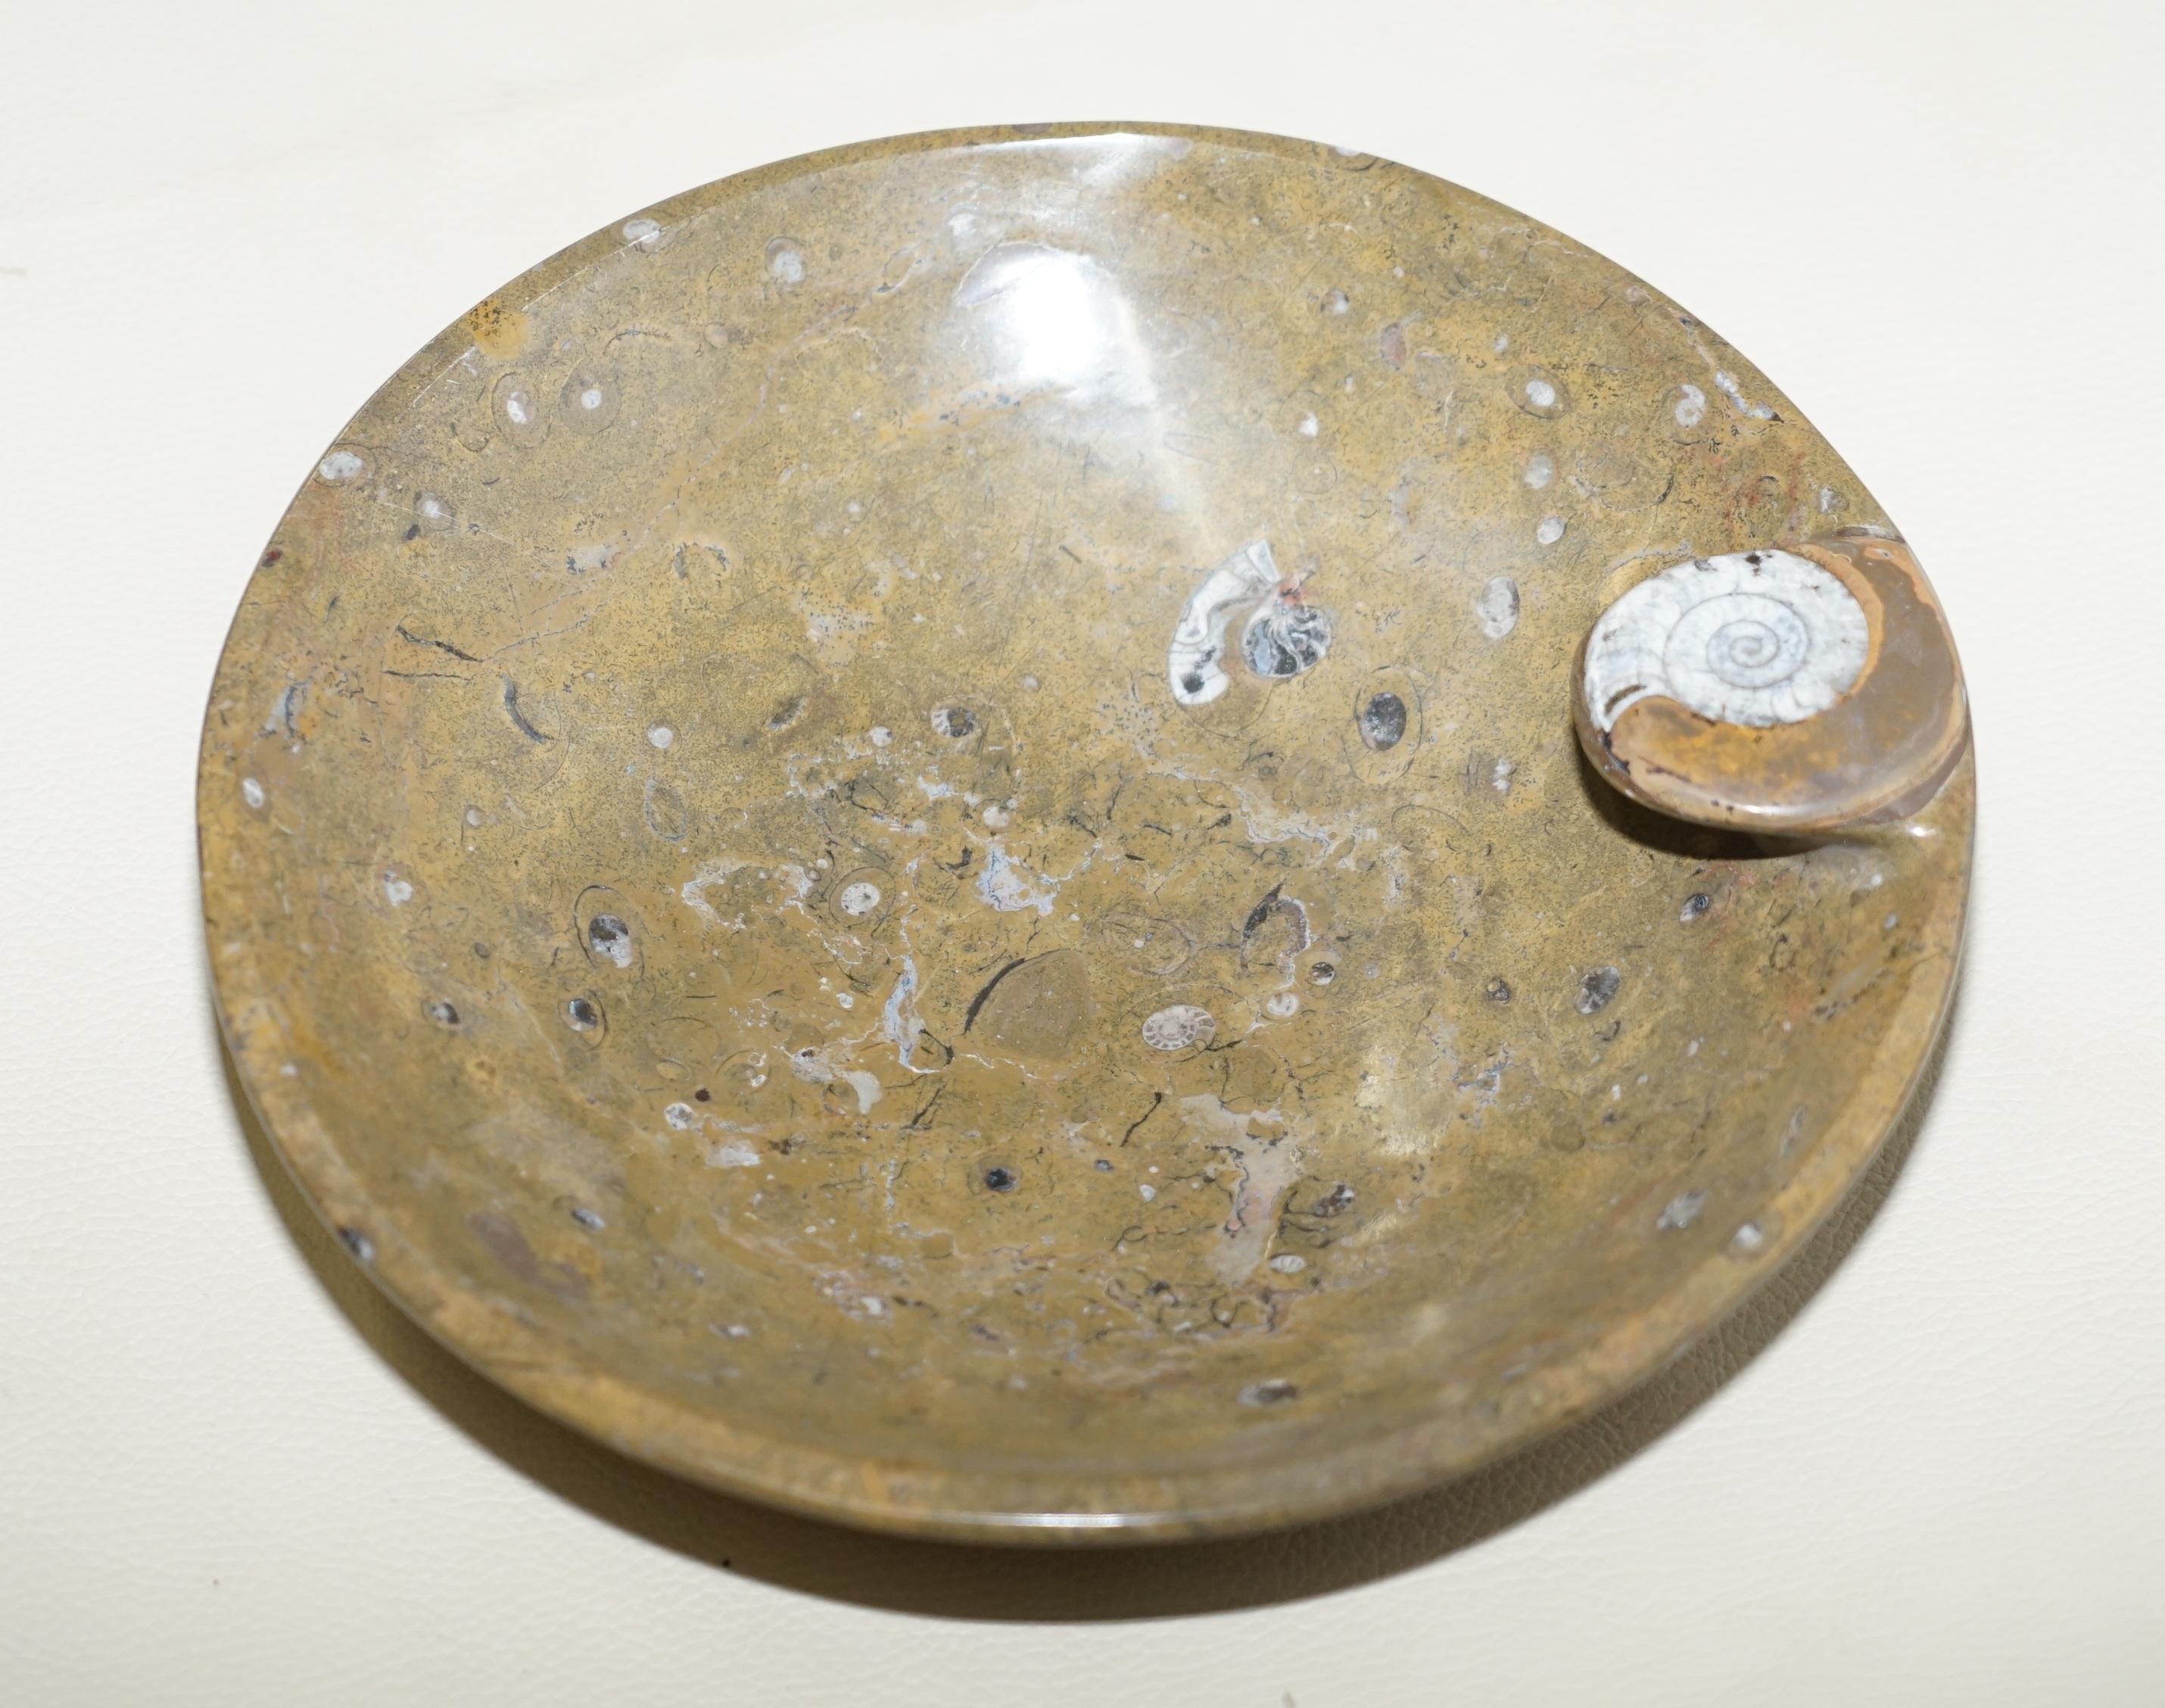 Nous sommes ravis d'offrir à la vente ce bol original très décoratif, vieux de plus de 180 millions d'années, provenant des montagnes de l'Atlas marocain et poli pour obtenir une finition en marbre

Ils sont vraiment exquis, ils ont chacun un